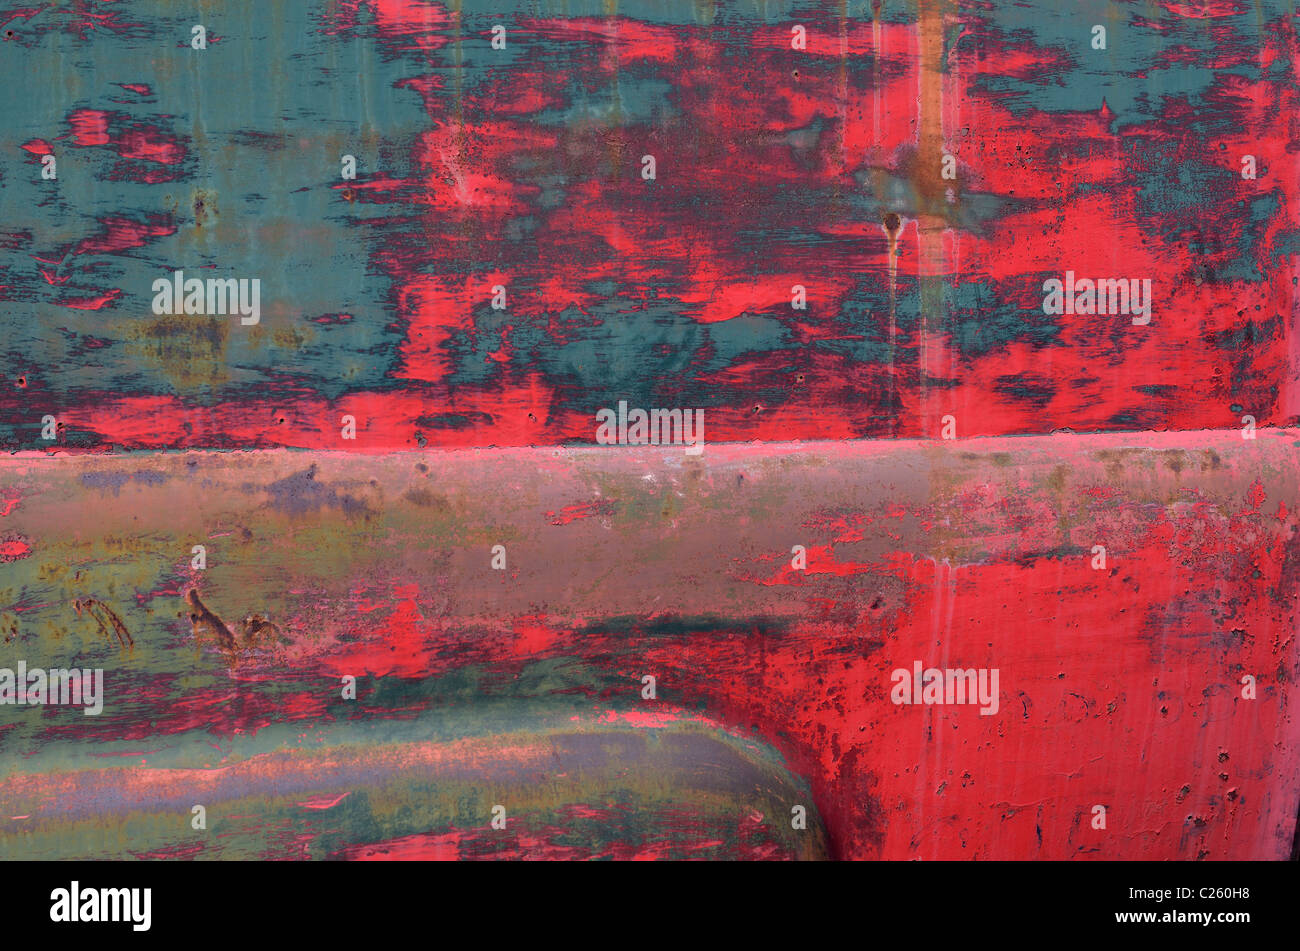 Abstrakt Blau und Rot abblätternde Farbe an der Seite eines alten, verlassenen rosten Lkw Stockfoto